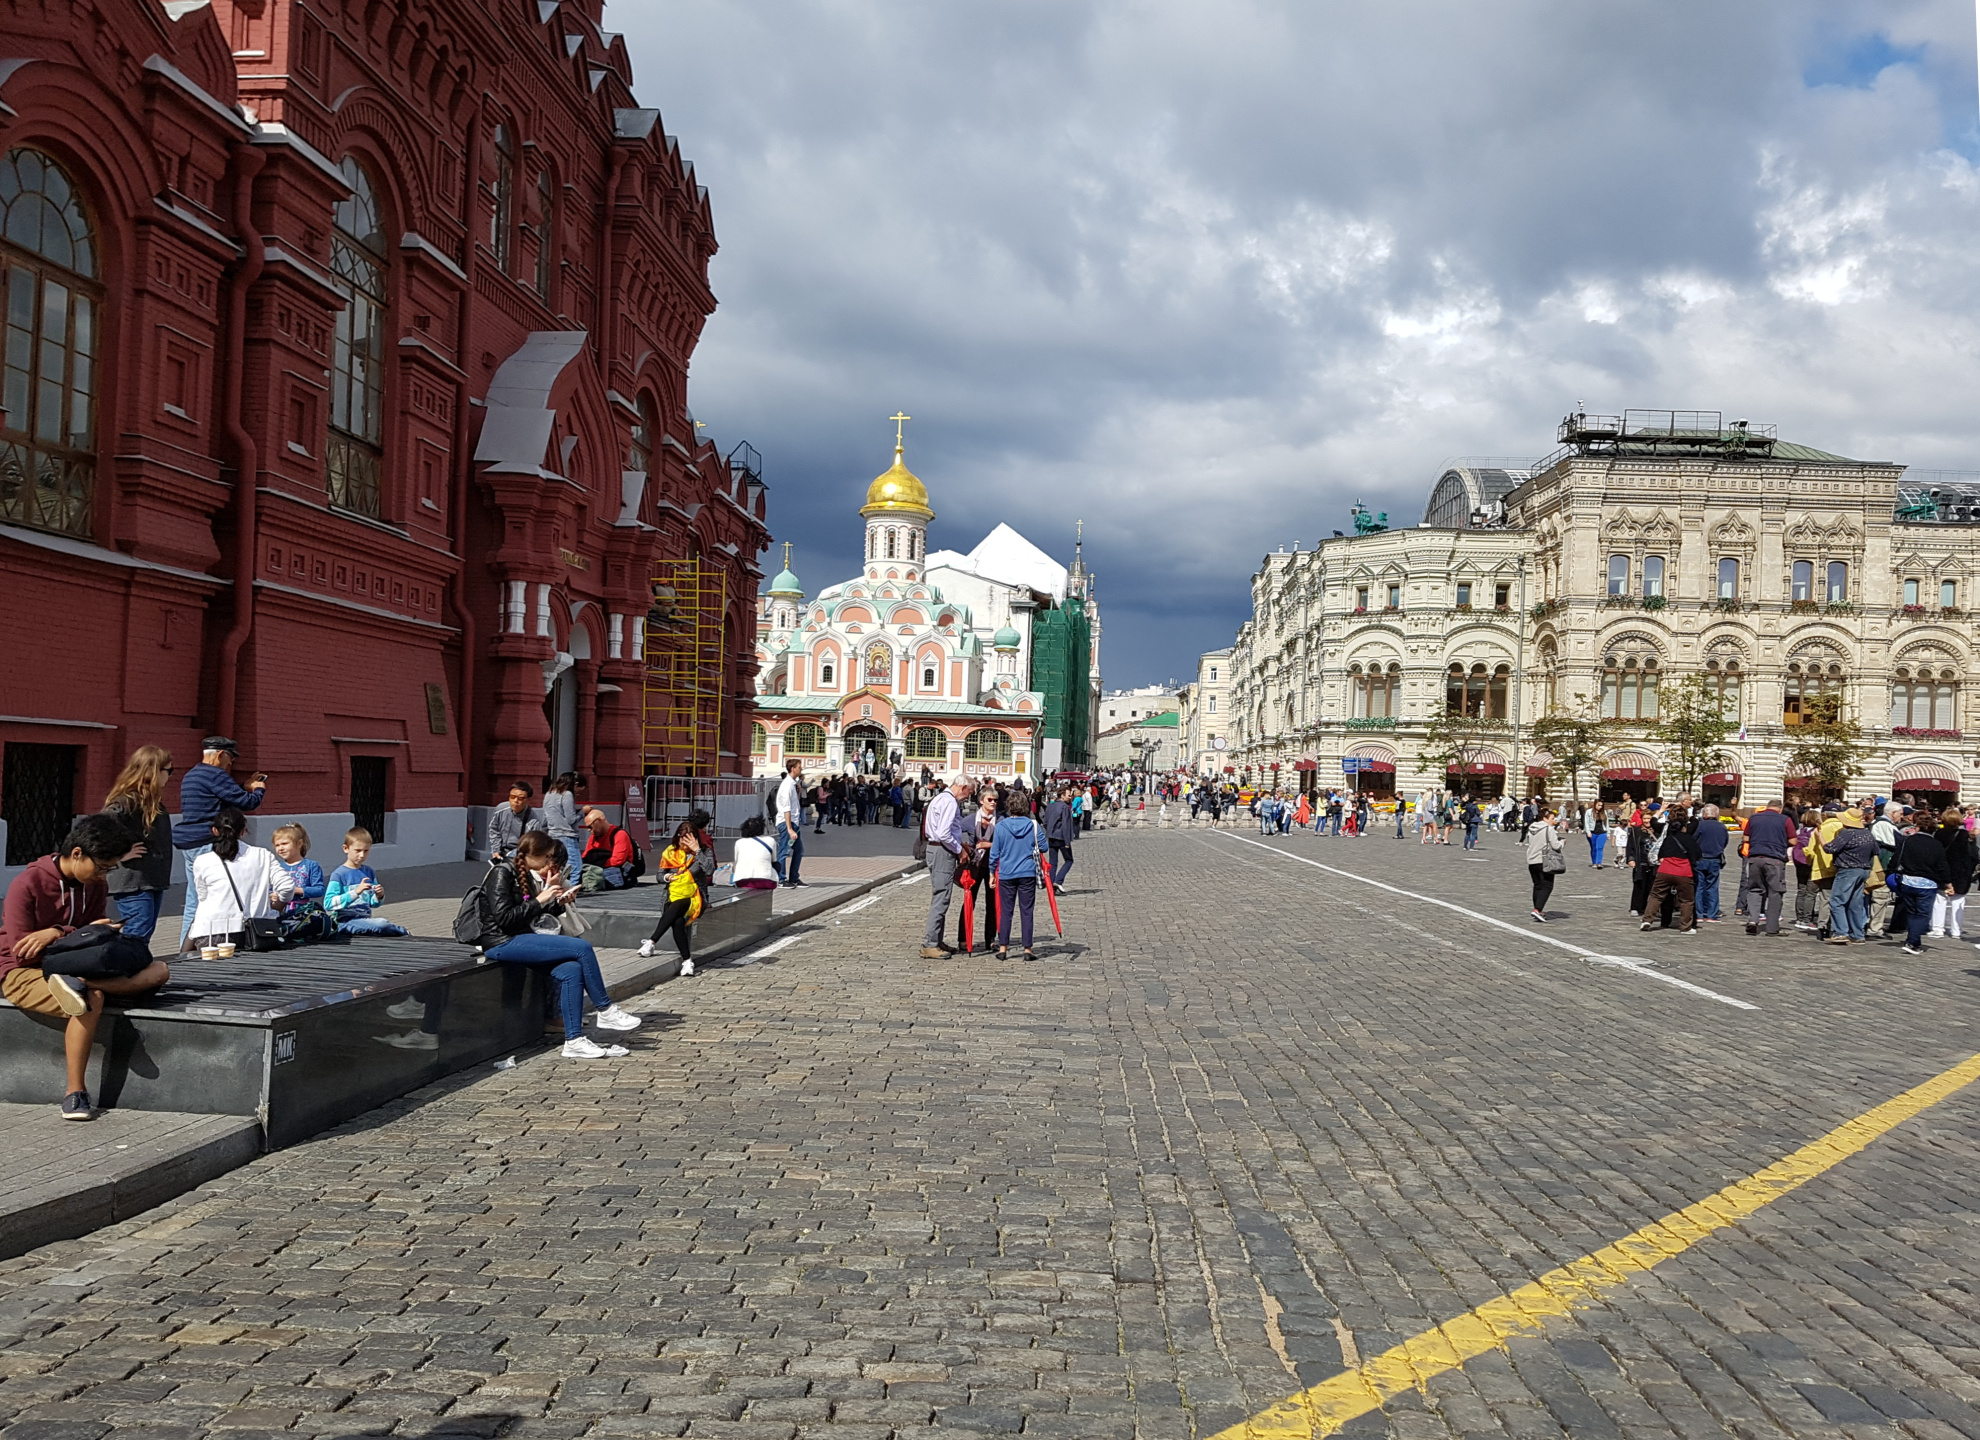 20170706-154226-Moscow-Kreml-Red_Square-SR-2.jpg